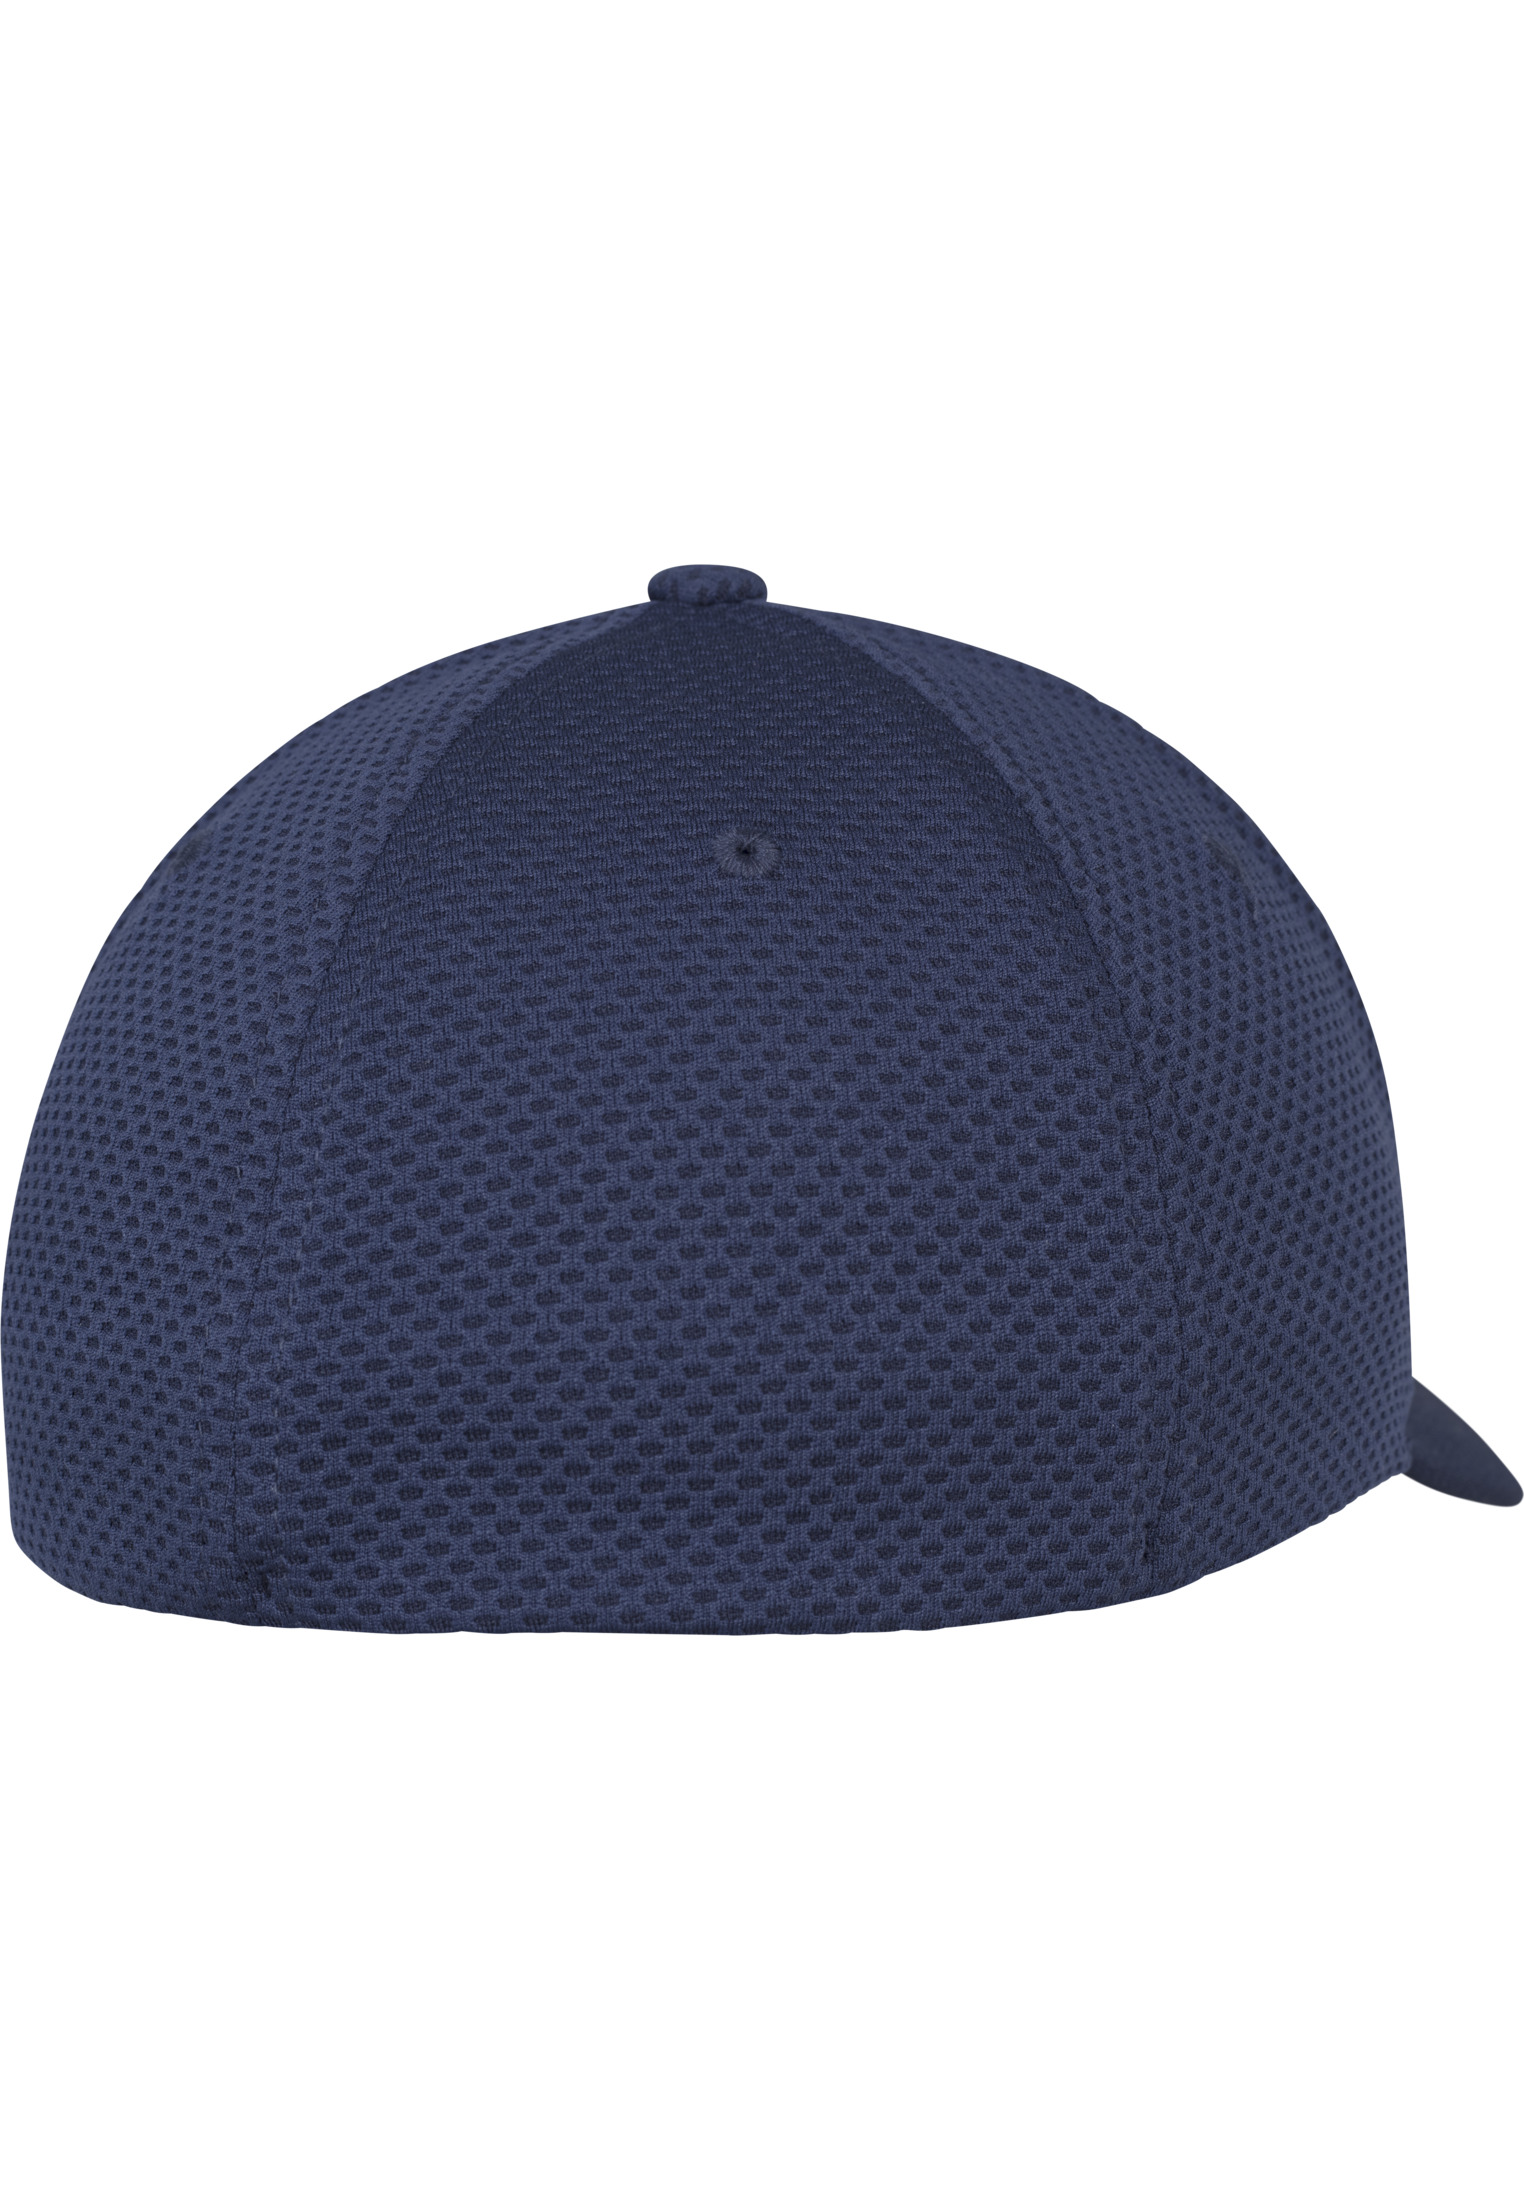 Hexagon Cap-6584 3D Flexfit Jersey